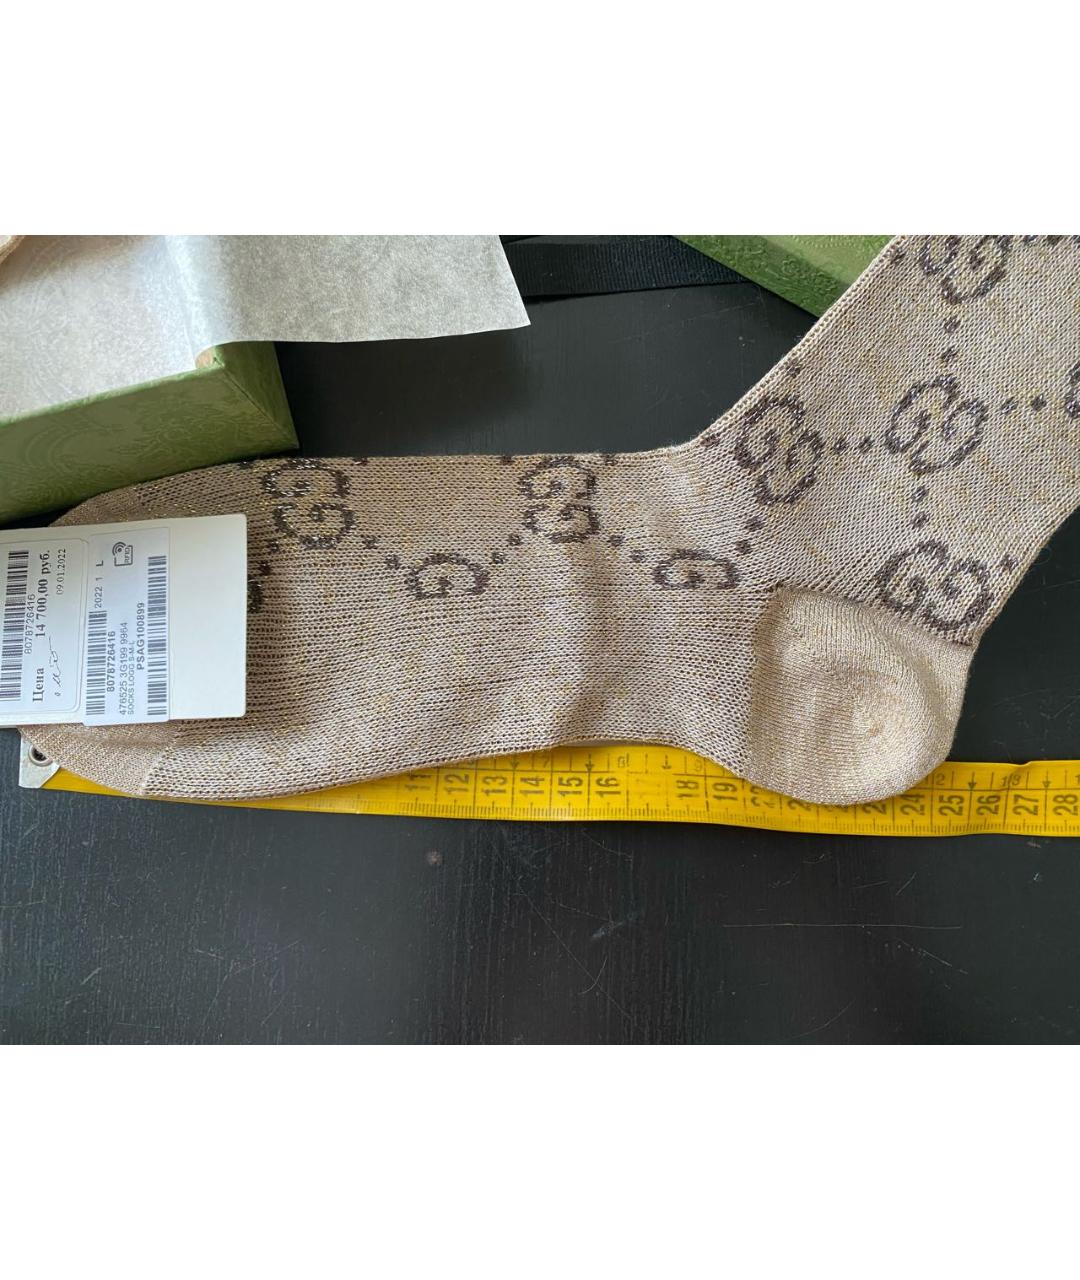 GUCCI Бежевые носки, чулки и колготы, фото 2